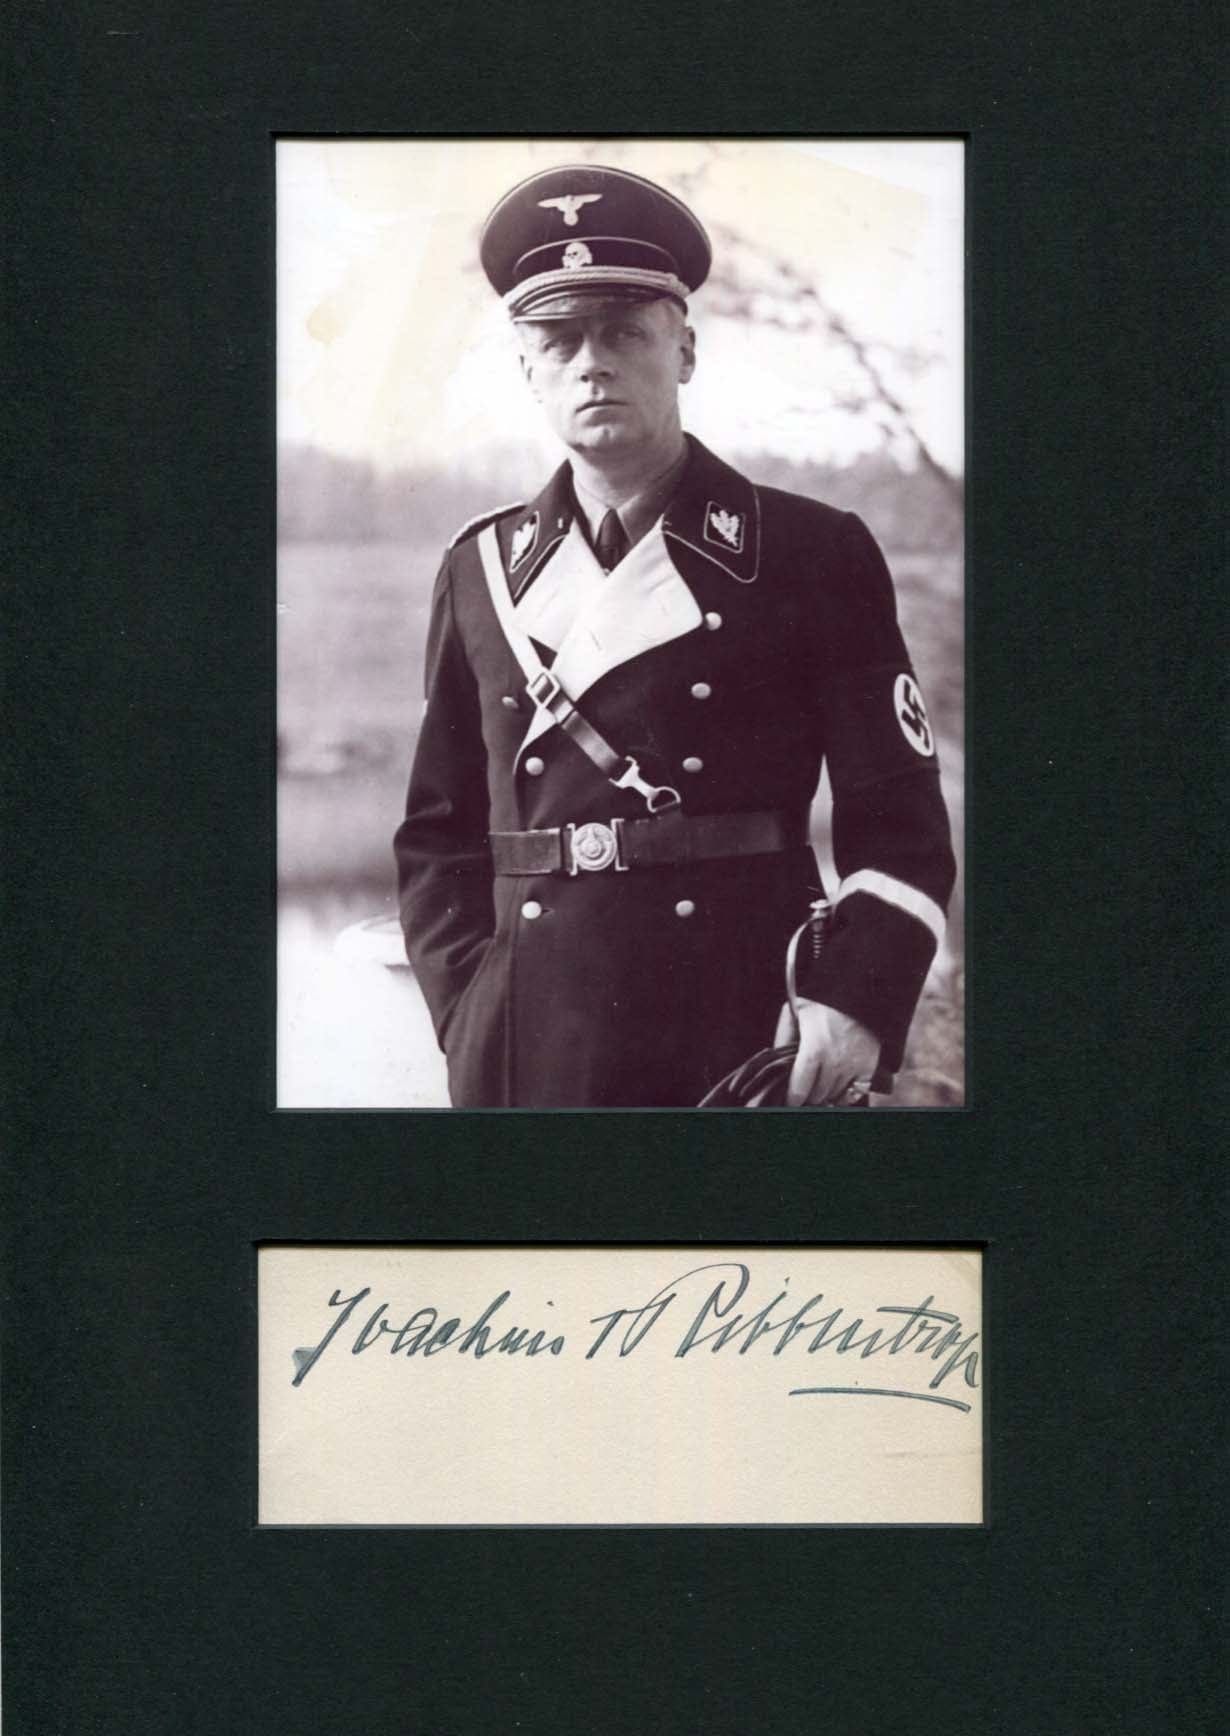 Joachim von Ribbentrop Autograph